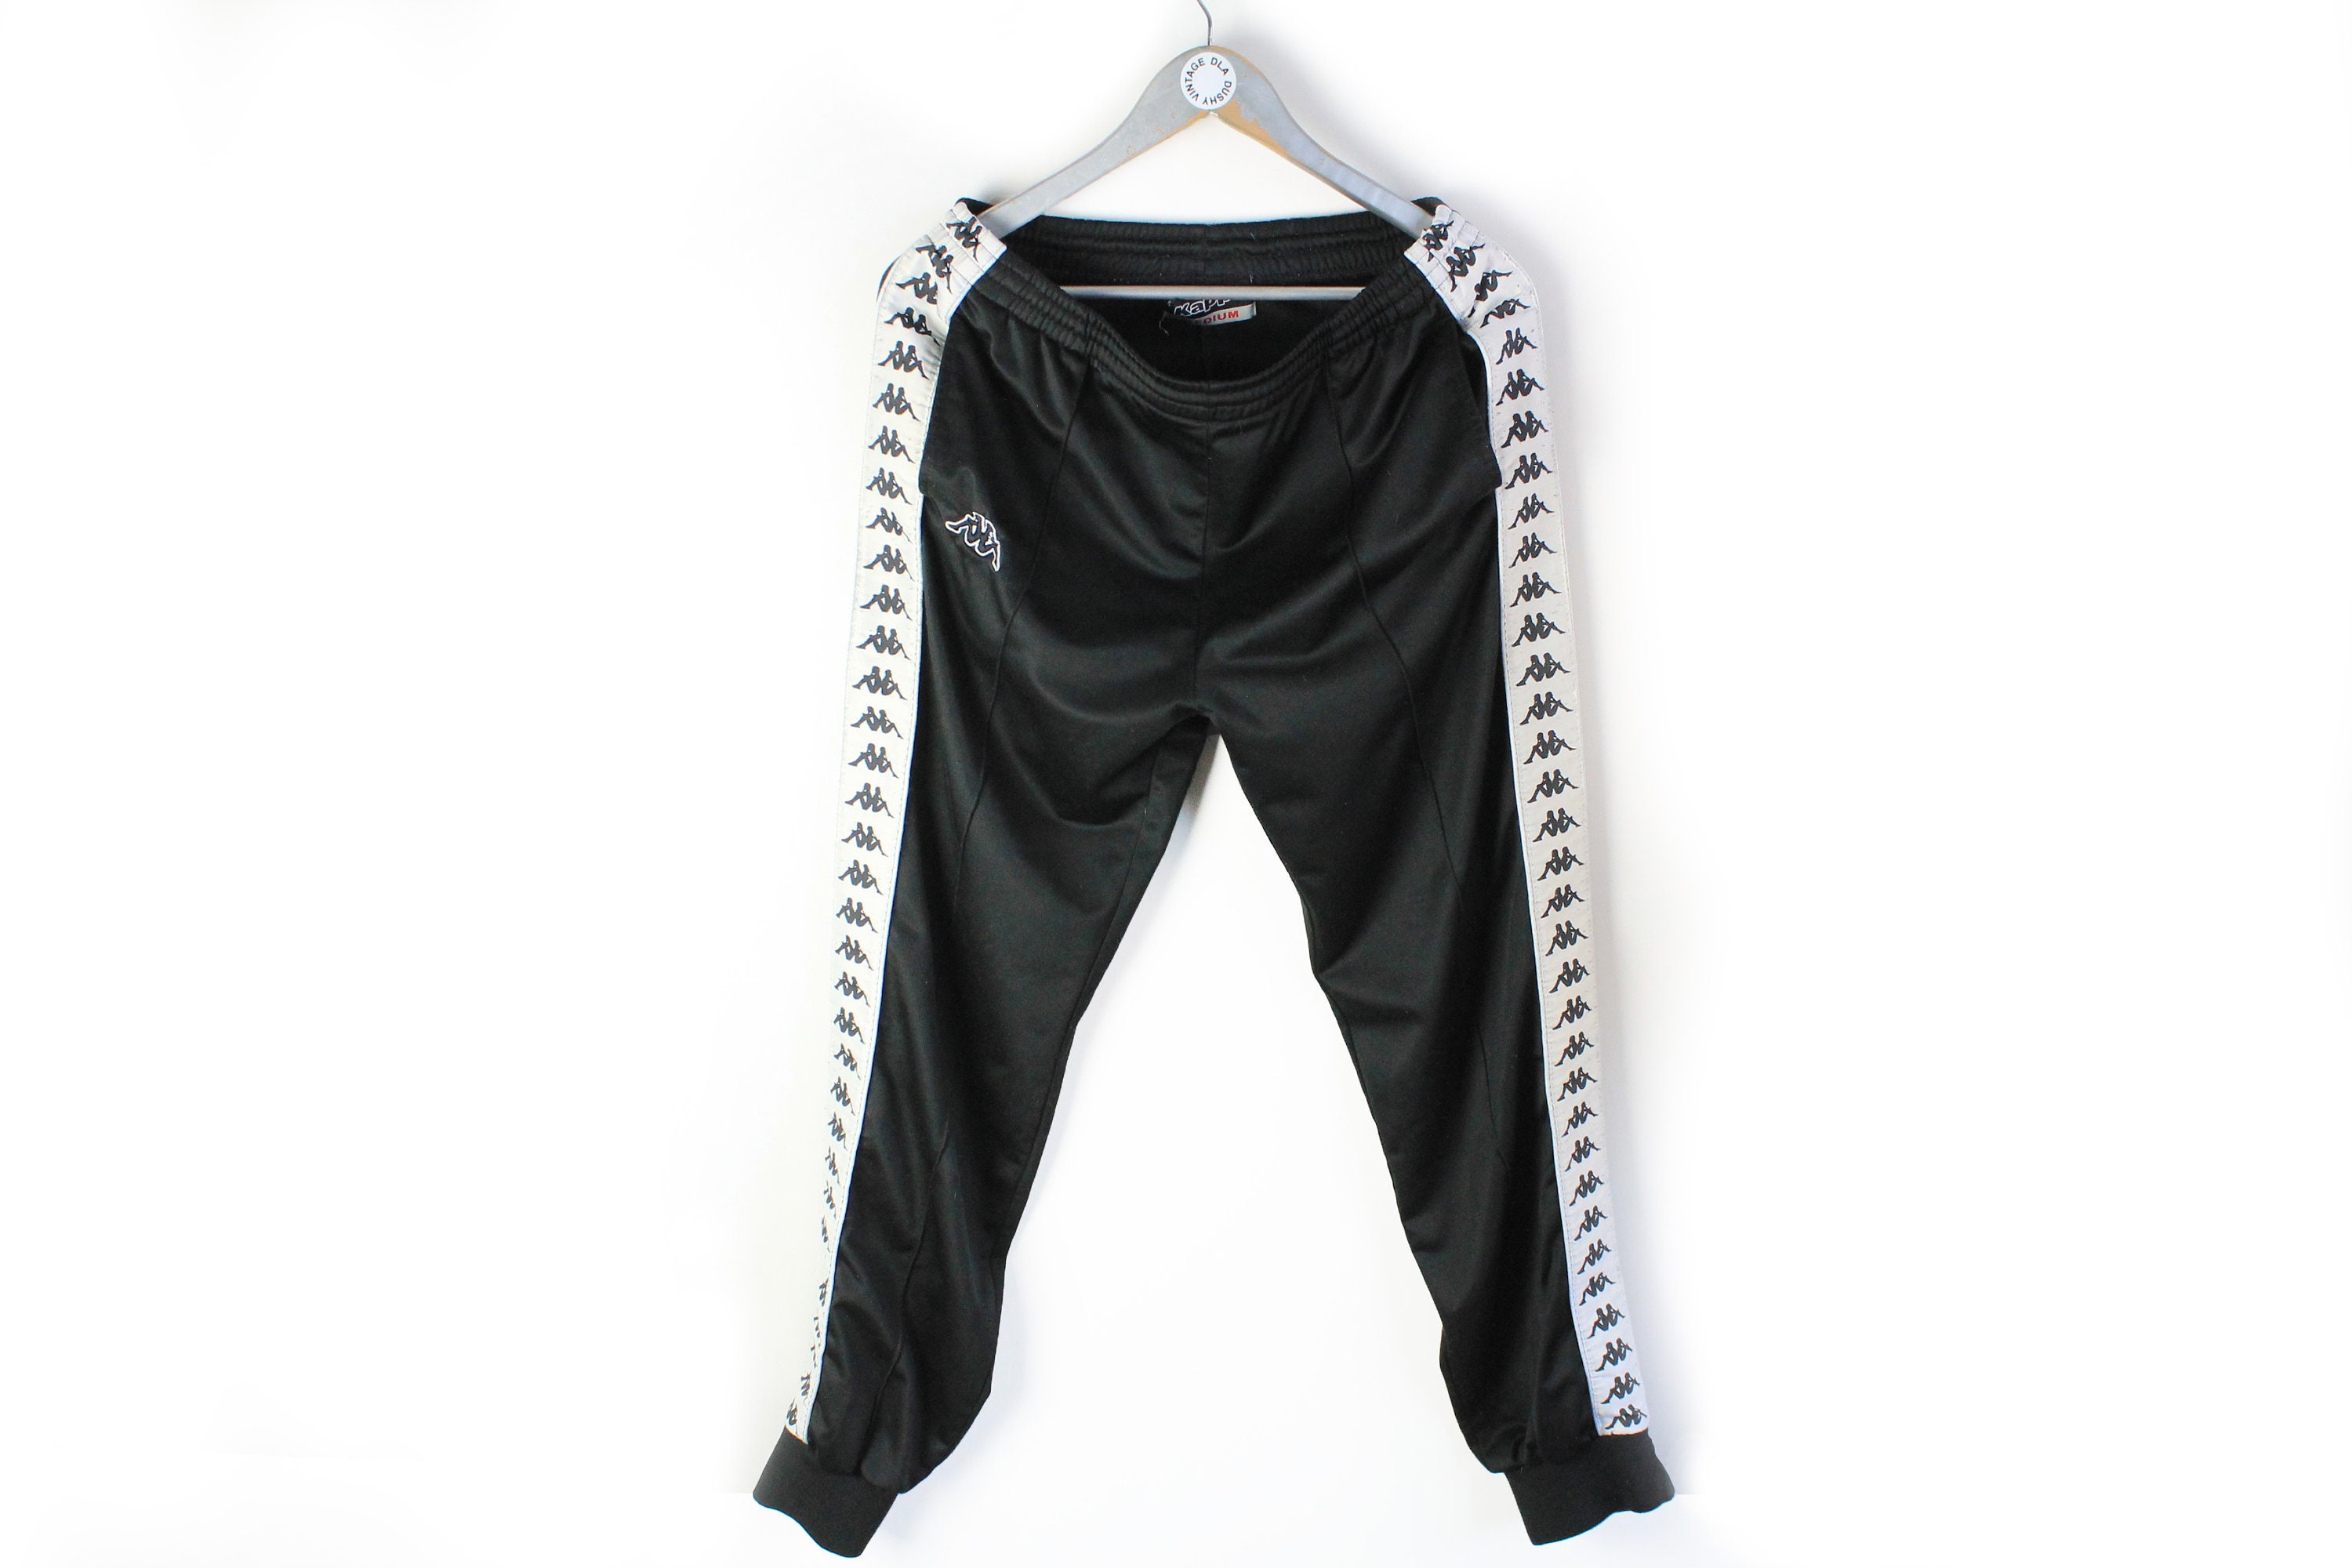 Vintage KAPPA Men's Track Pants Size M Medium Black White Full